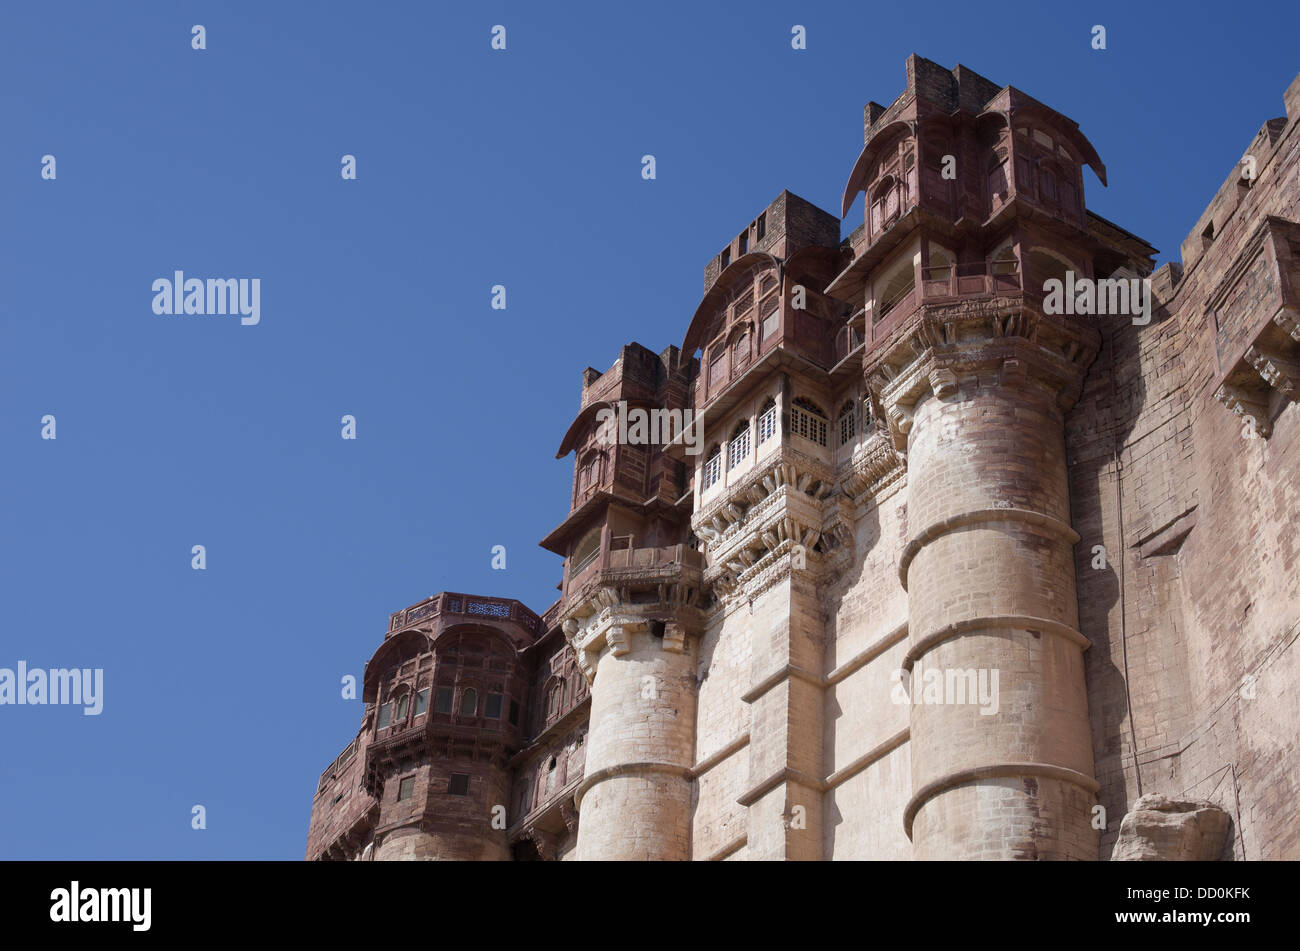 Meherangarh Fort - Jodhpur, Rajashtan, India Stock Photo